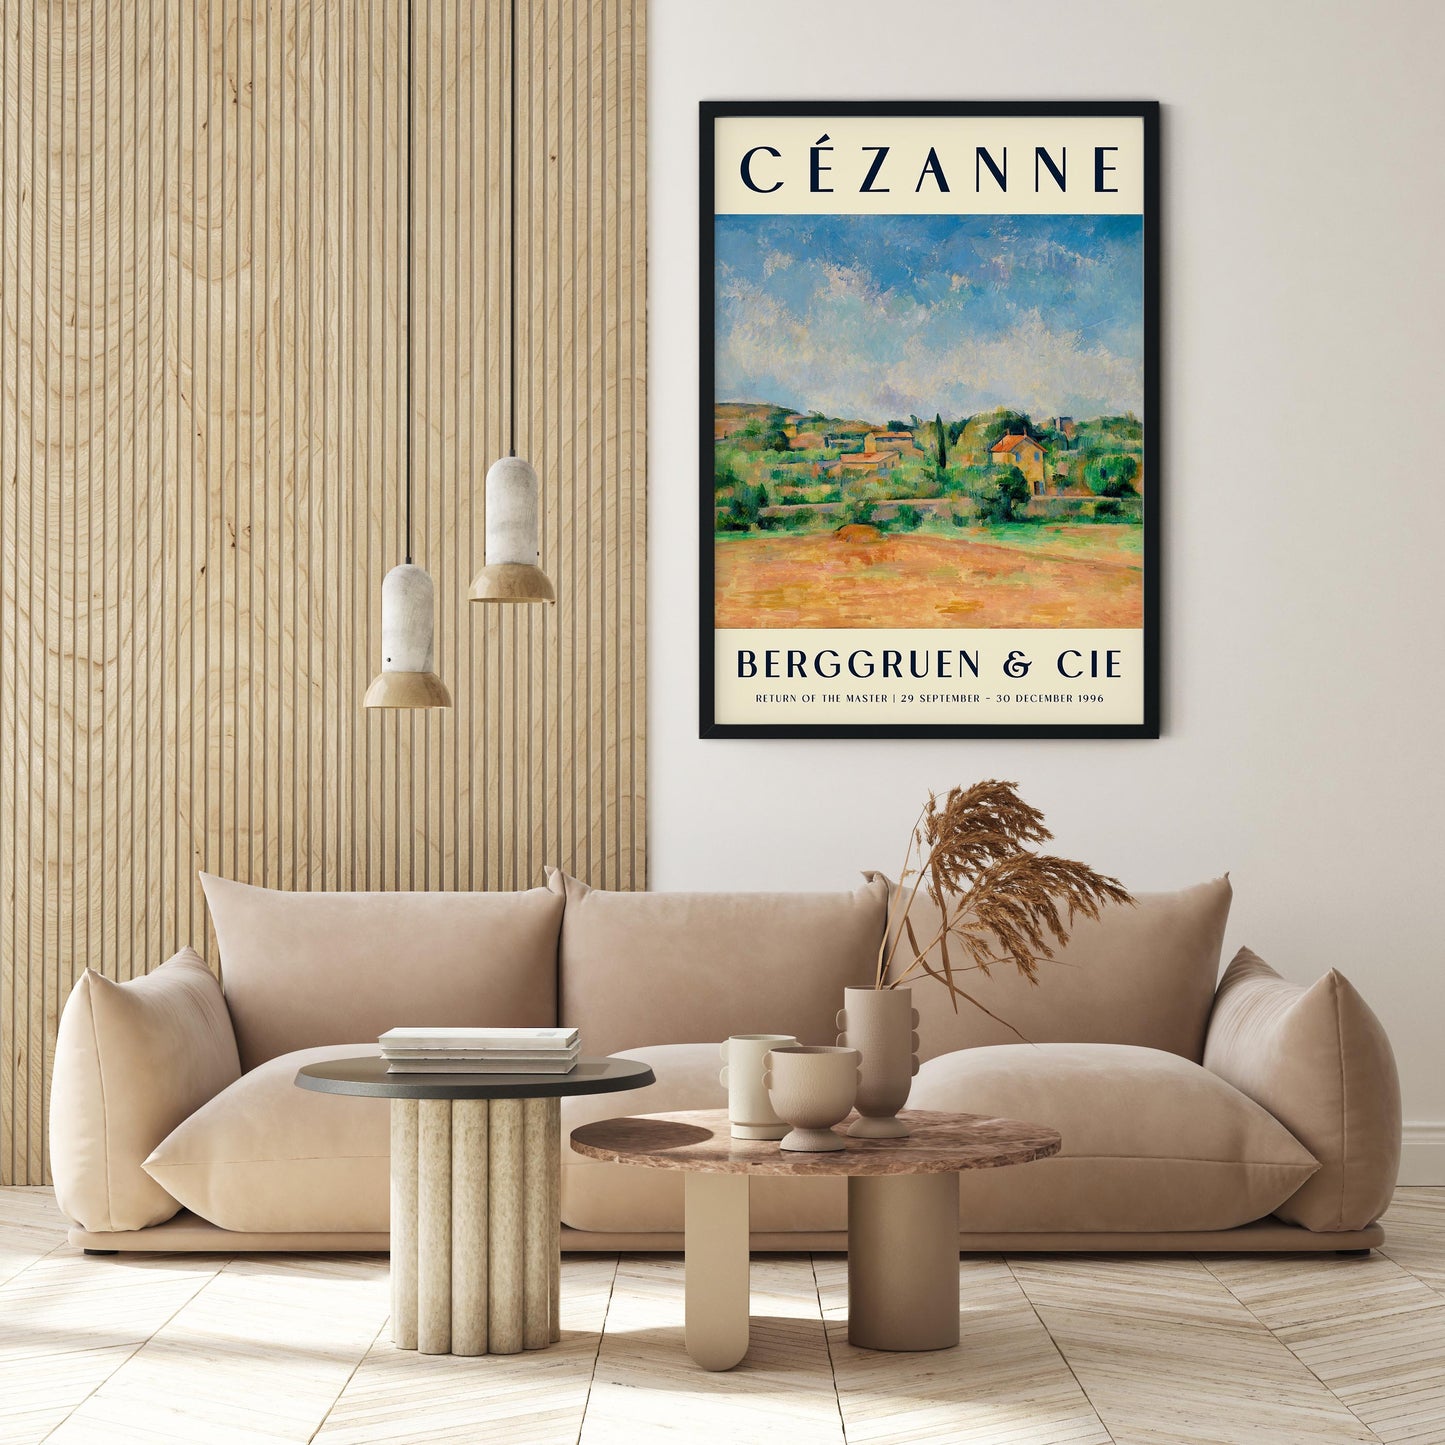 Cézanne The Bellevue Plain Art Exhibition Poster